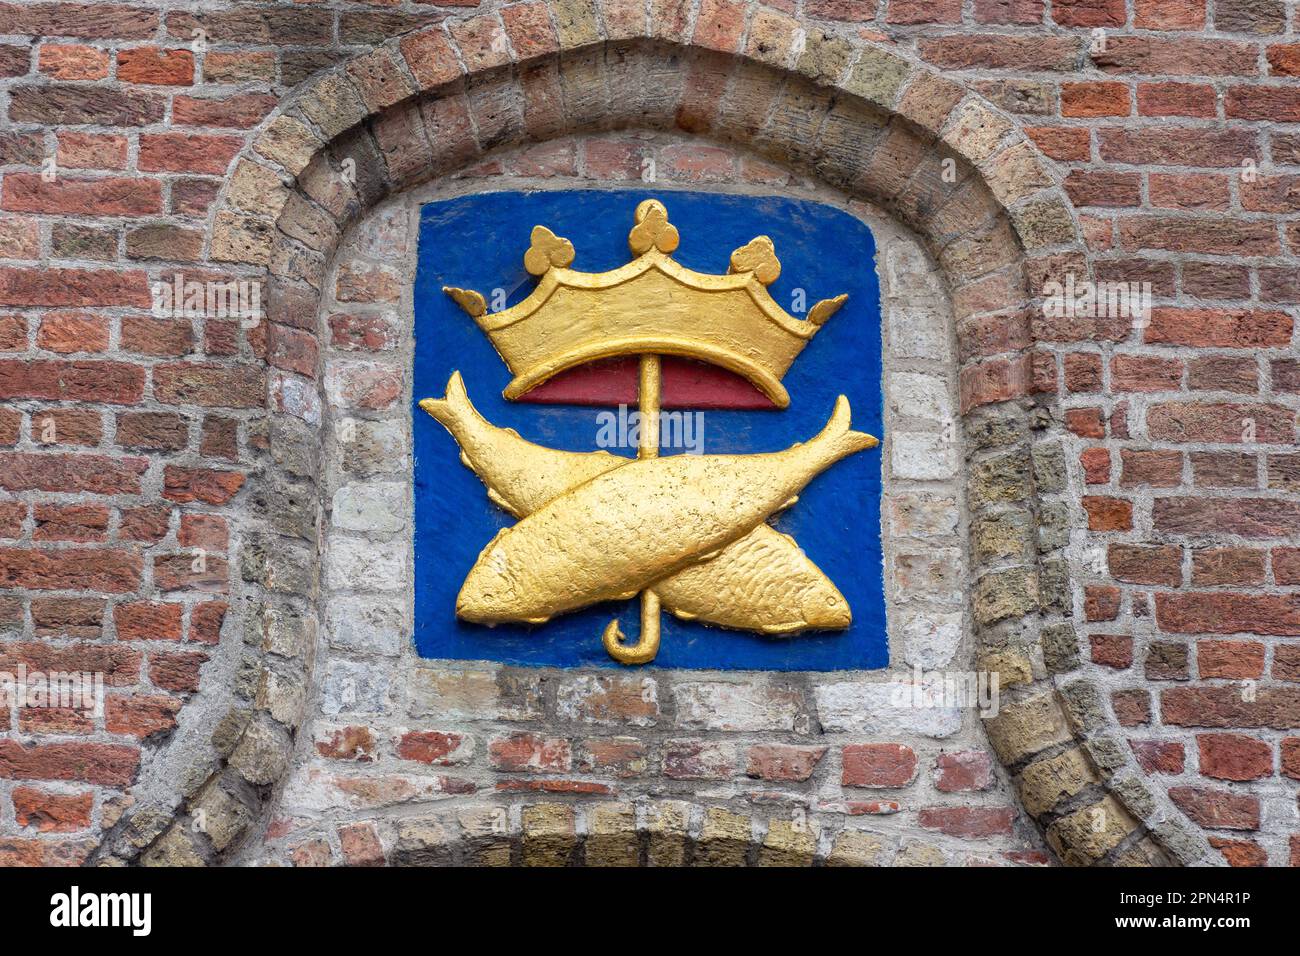 Poisson antique, crochet et cime de la couronne sur le bâtiment historique, Huidenvettersplein, Brugge (Bruges), province de Flandre Occidentale, région flamande, Belgique Banque D'Images